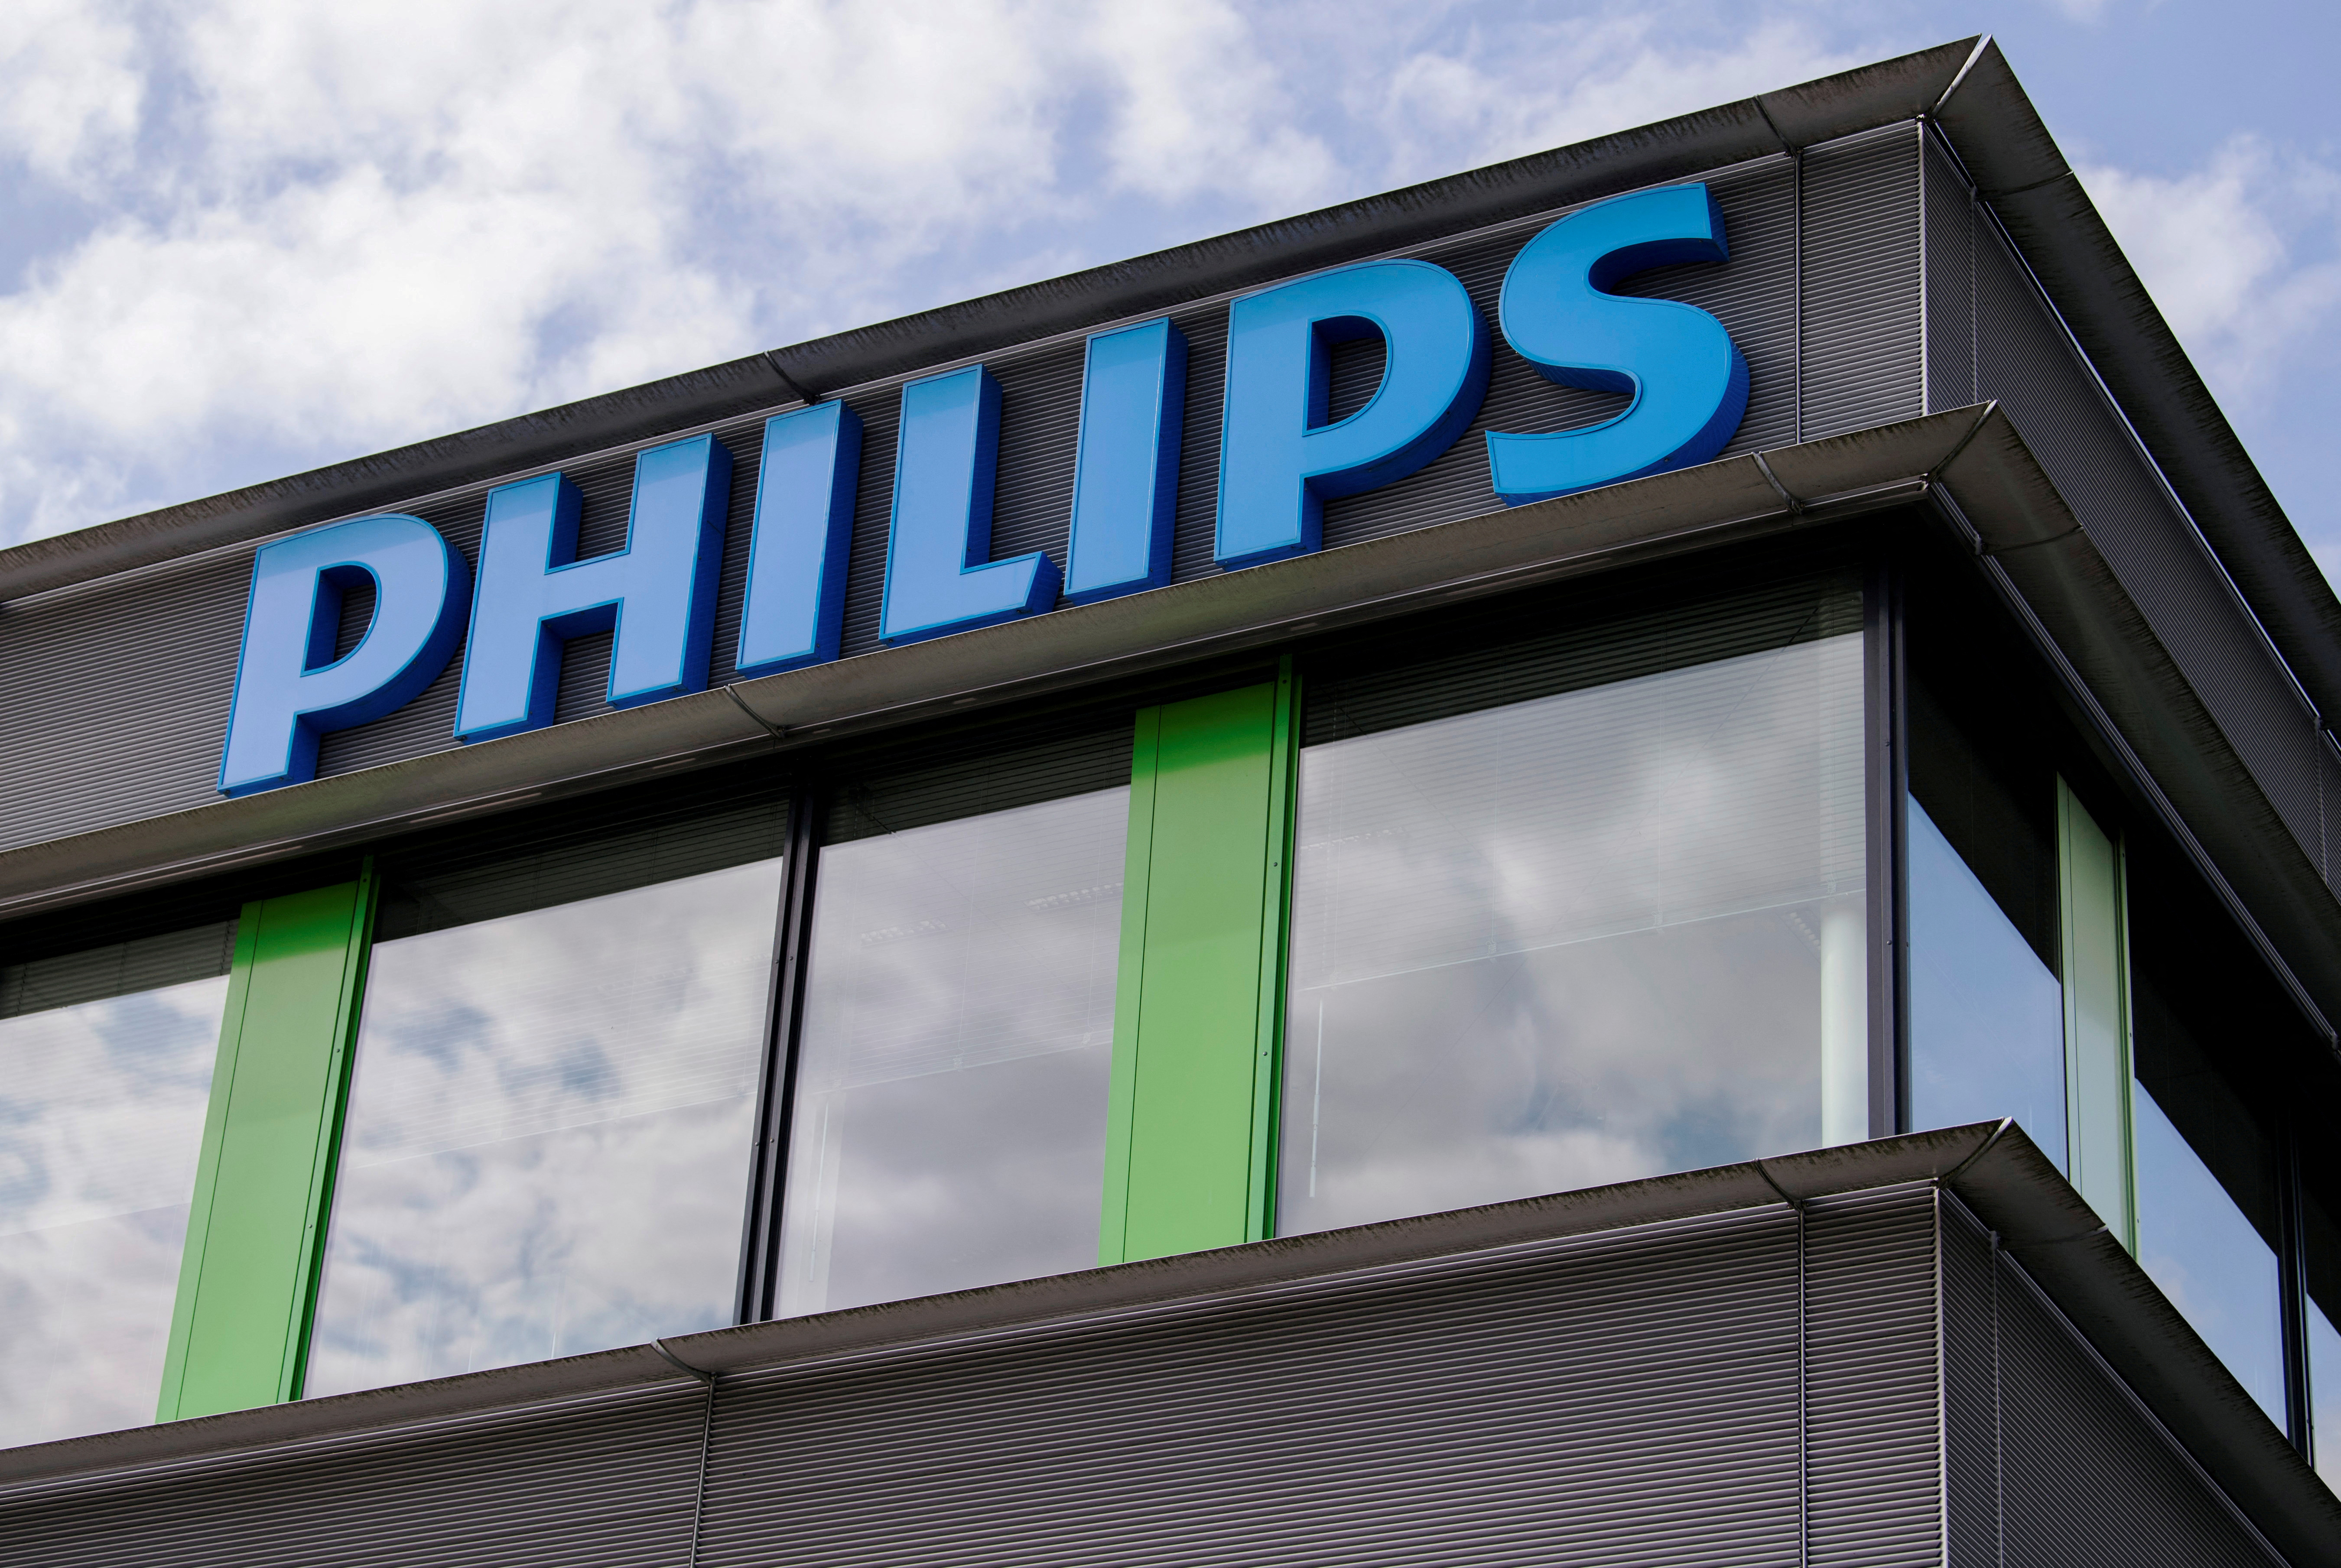 La familia Agnelli compra el 15% de Philips por unos 2.600 millones